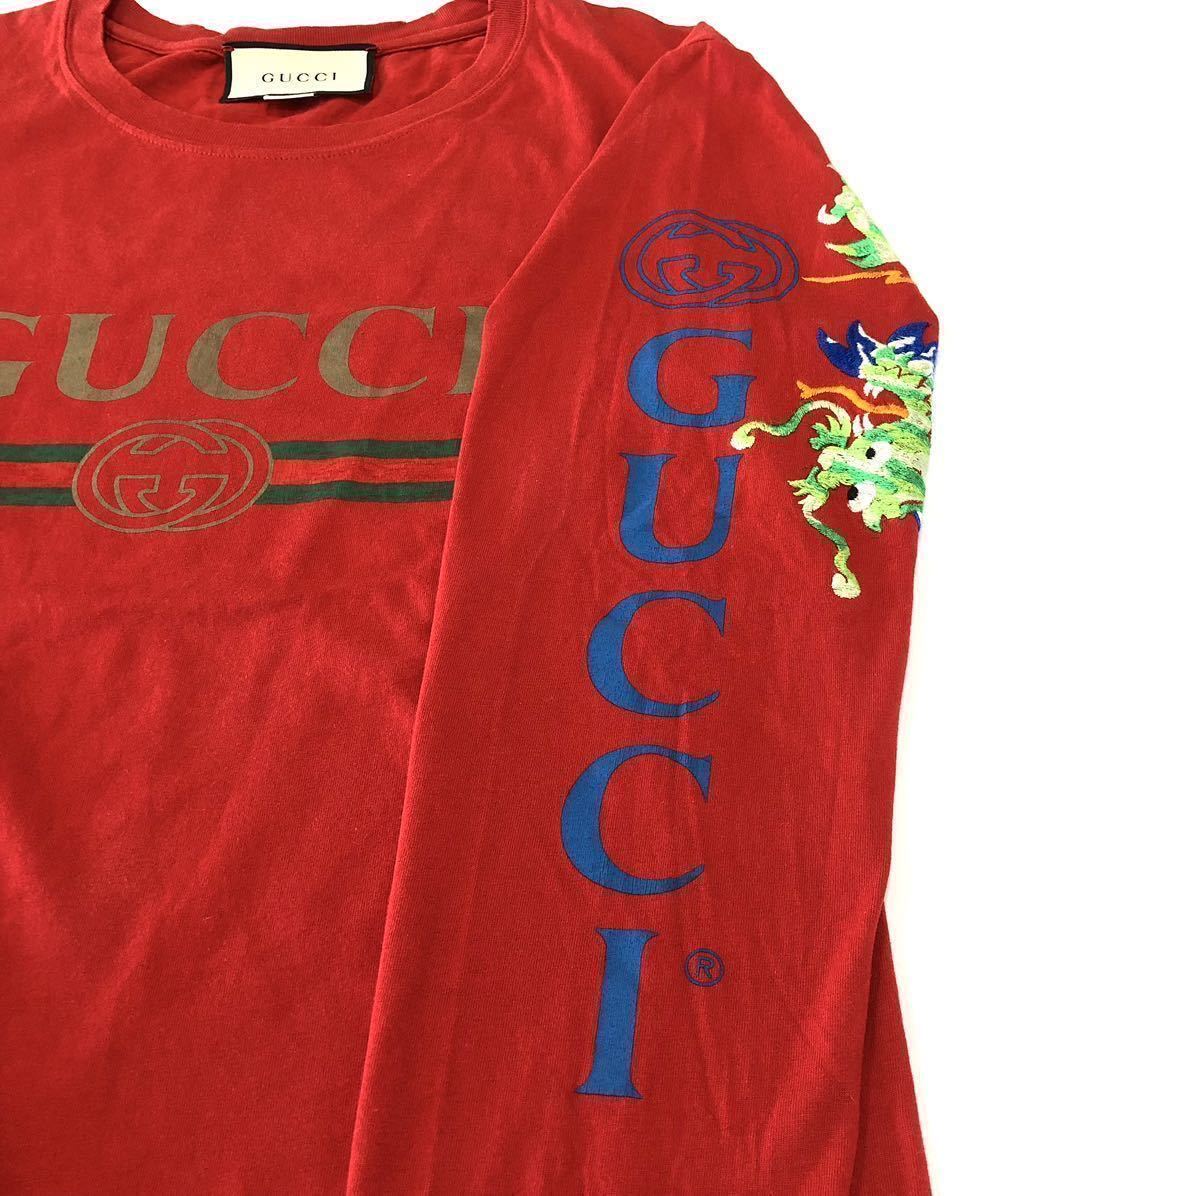 00s GUCCI Tシャツ XL センターロゴプリント ダークグレー イタリア-